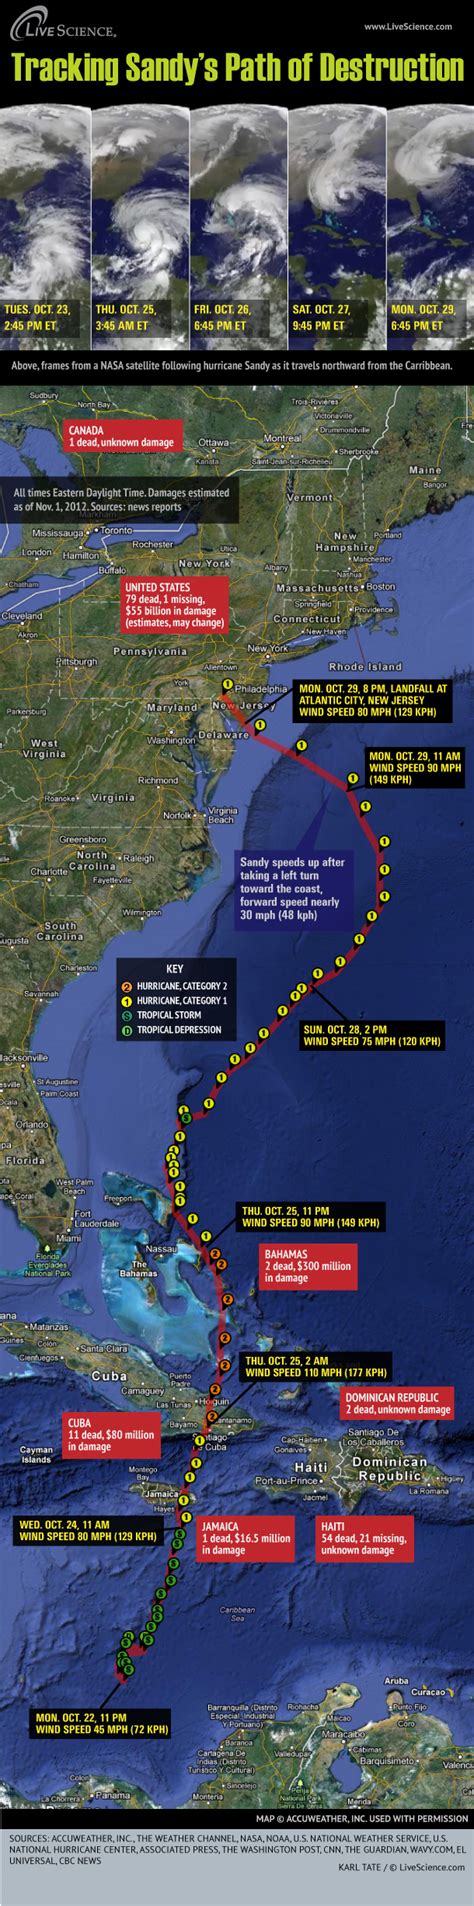 Timeline Of Hurricane Sandys Week Of Destruction Infographic Live